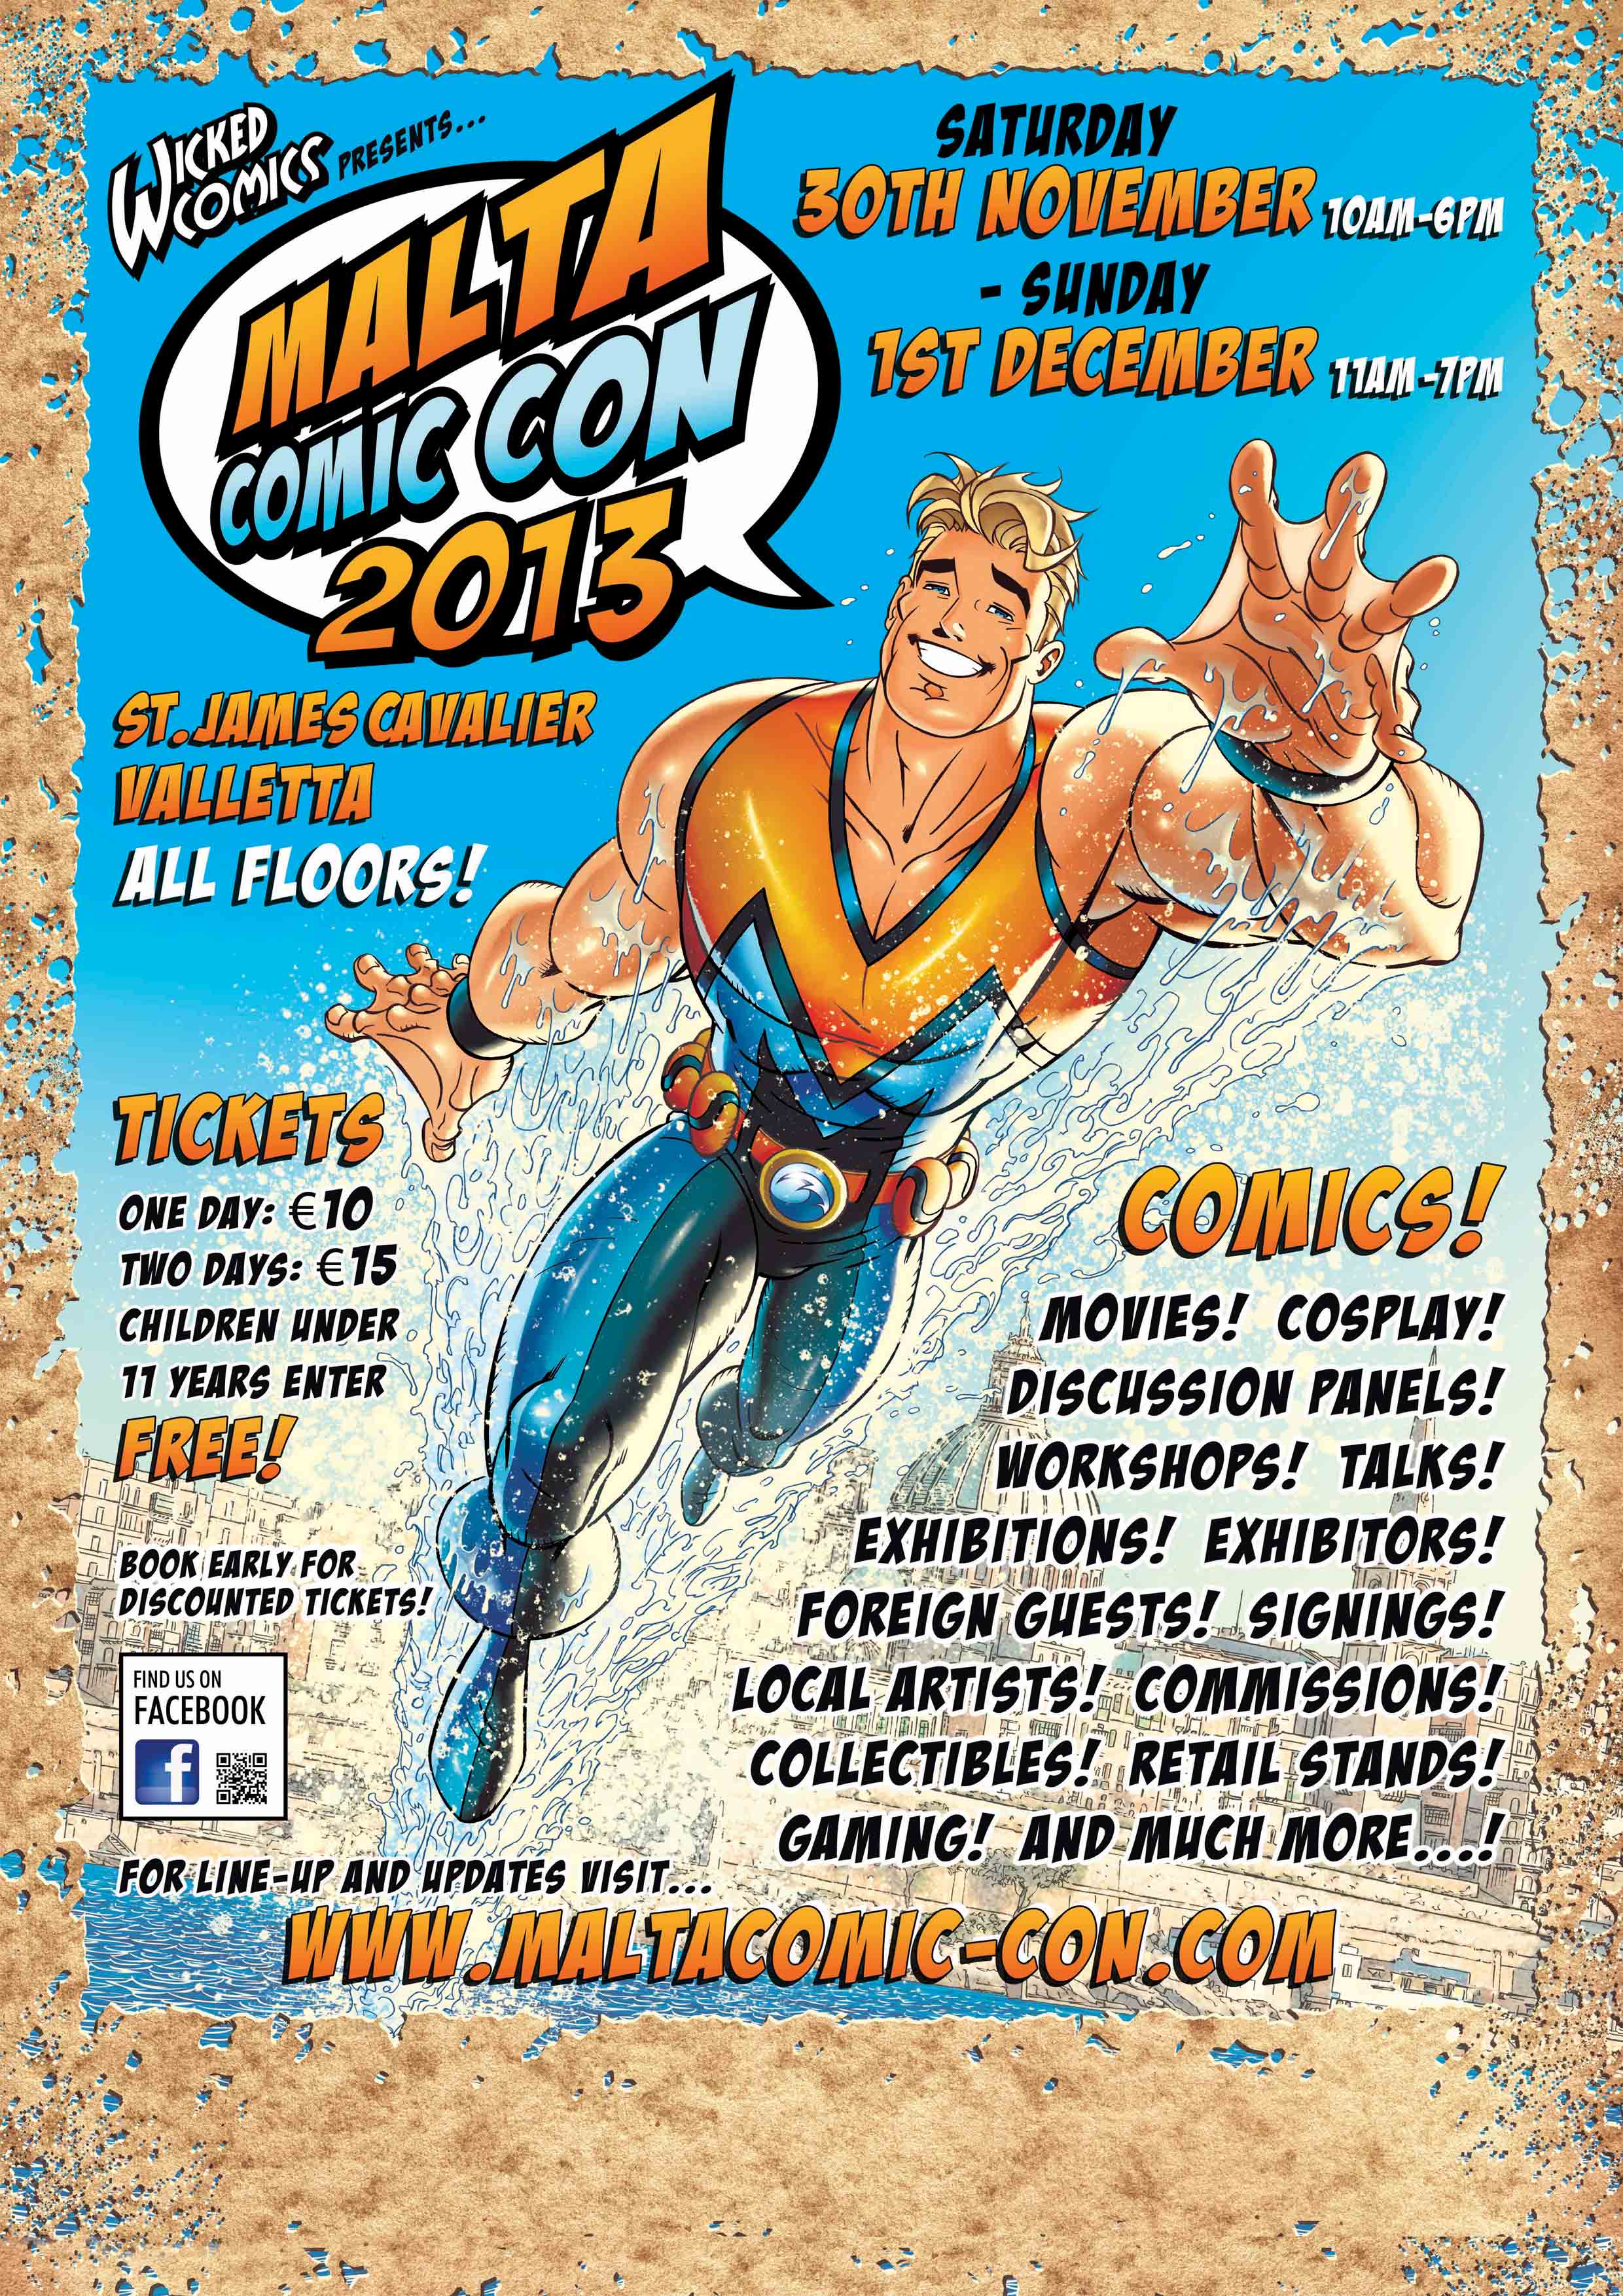 Malta Comic Con poster 2013